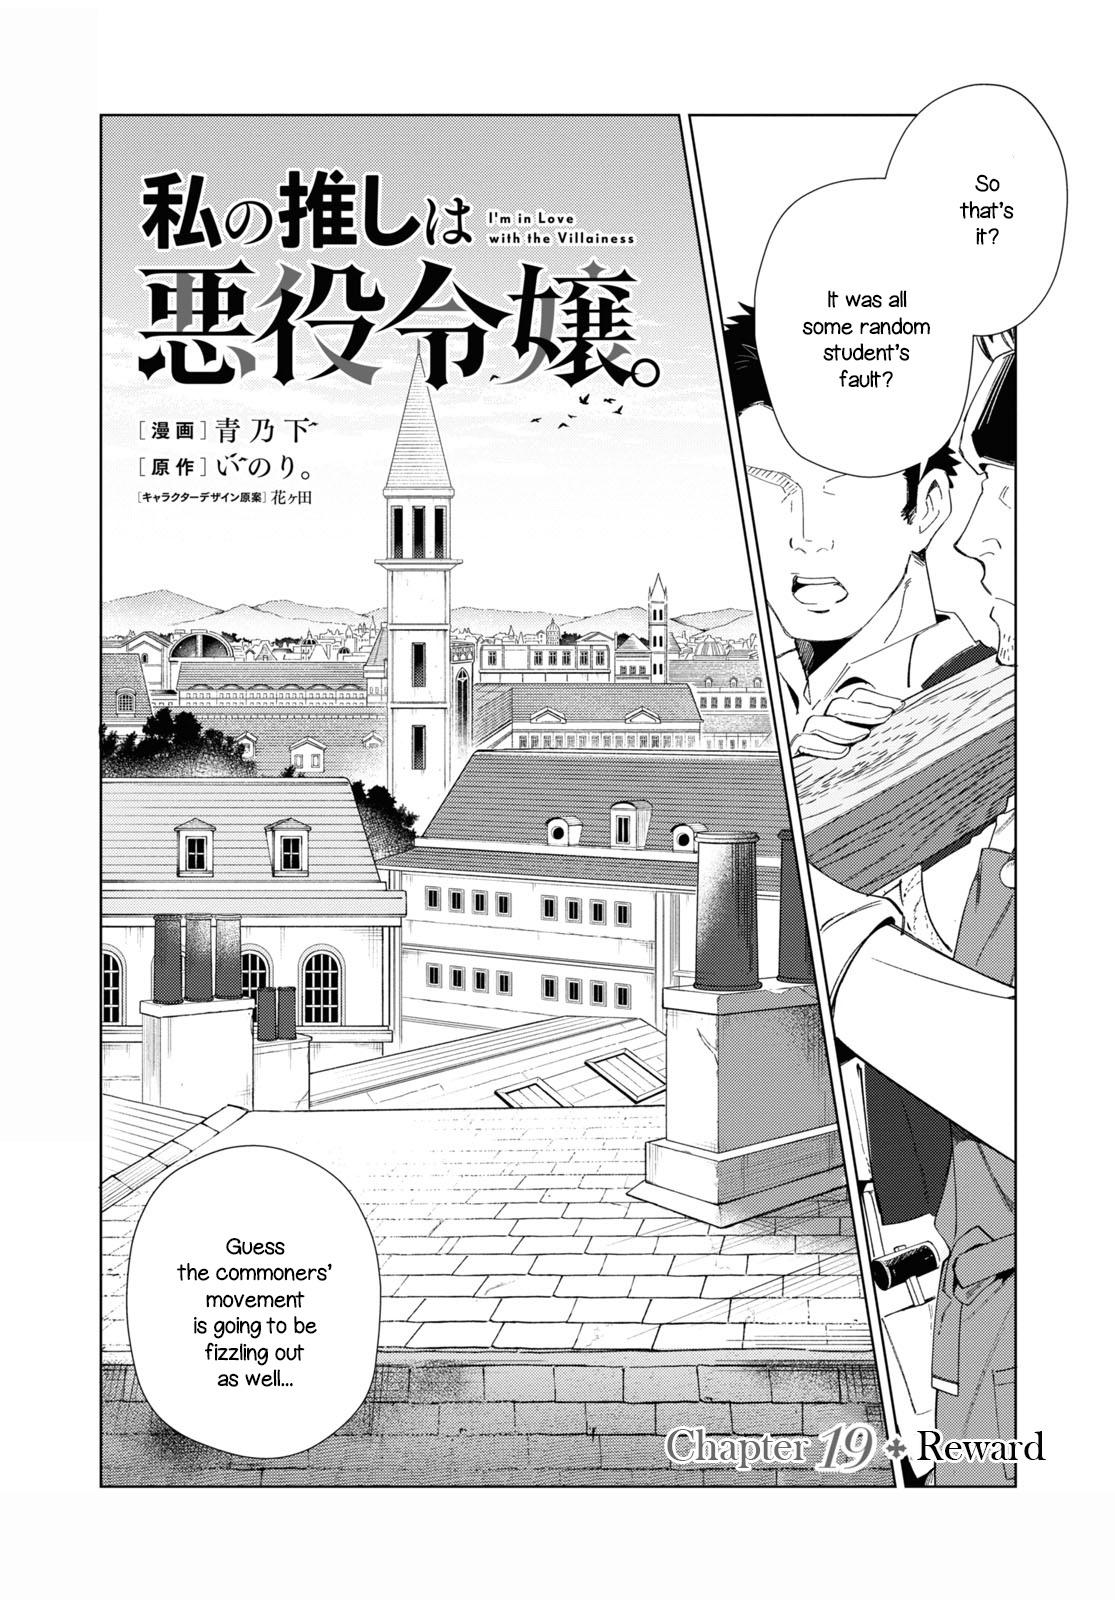 Read Watashi No Oshi Wa Akuyaku Reijou Chapter 22: Dominator on